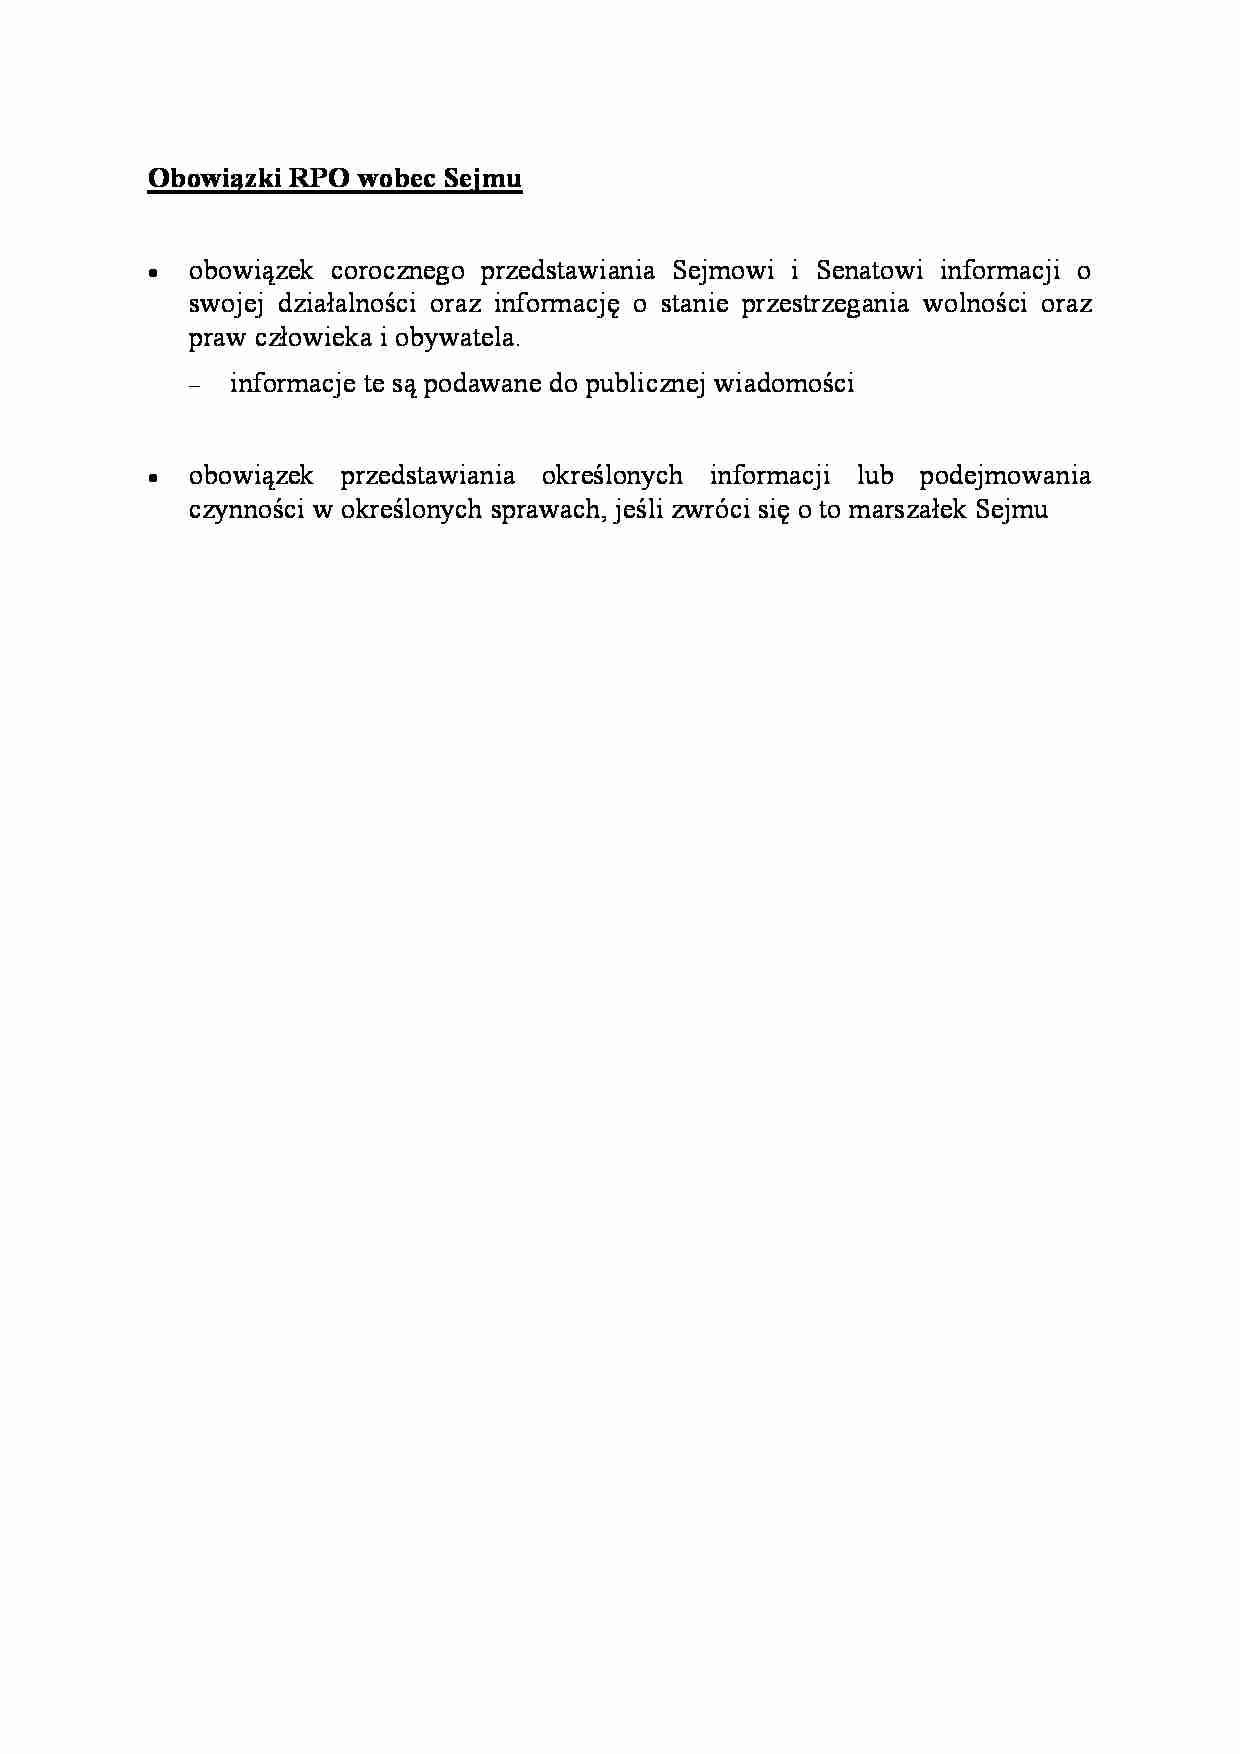 Obowiązki RPO wobec Sejmu - omówienie - strona 1